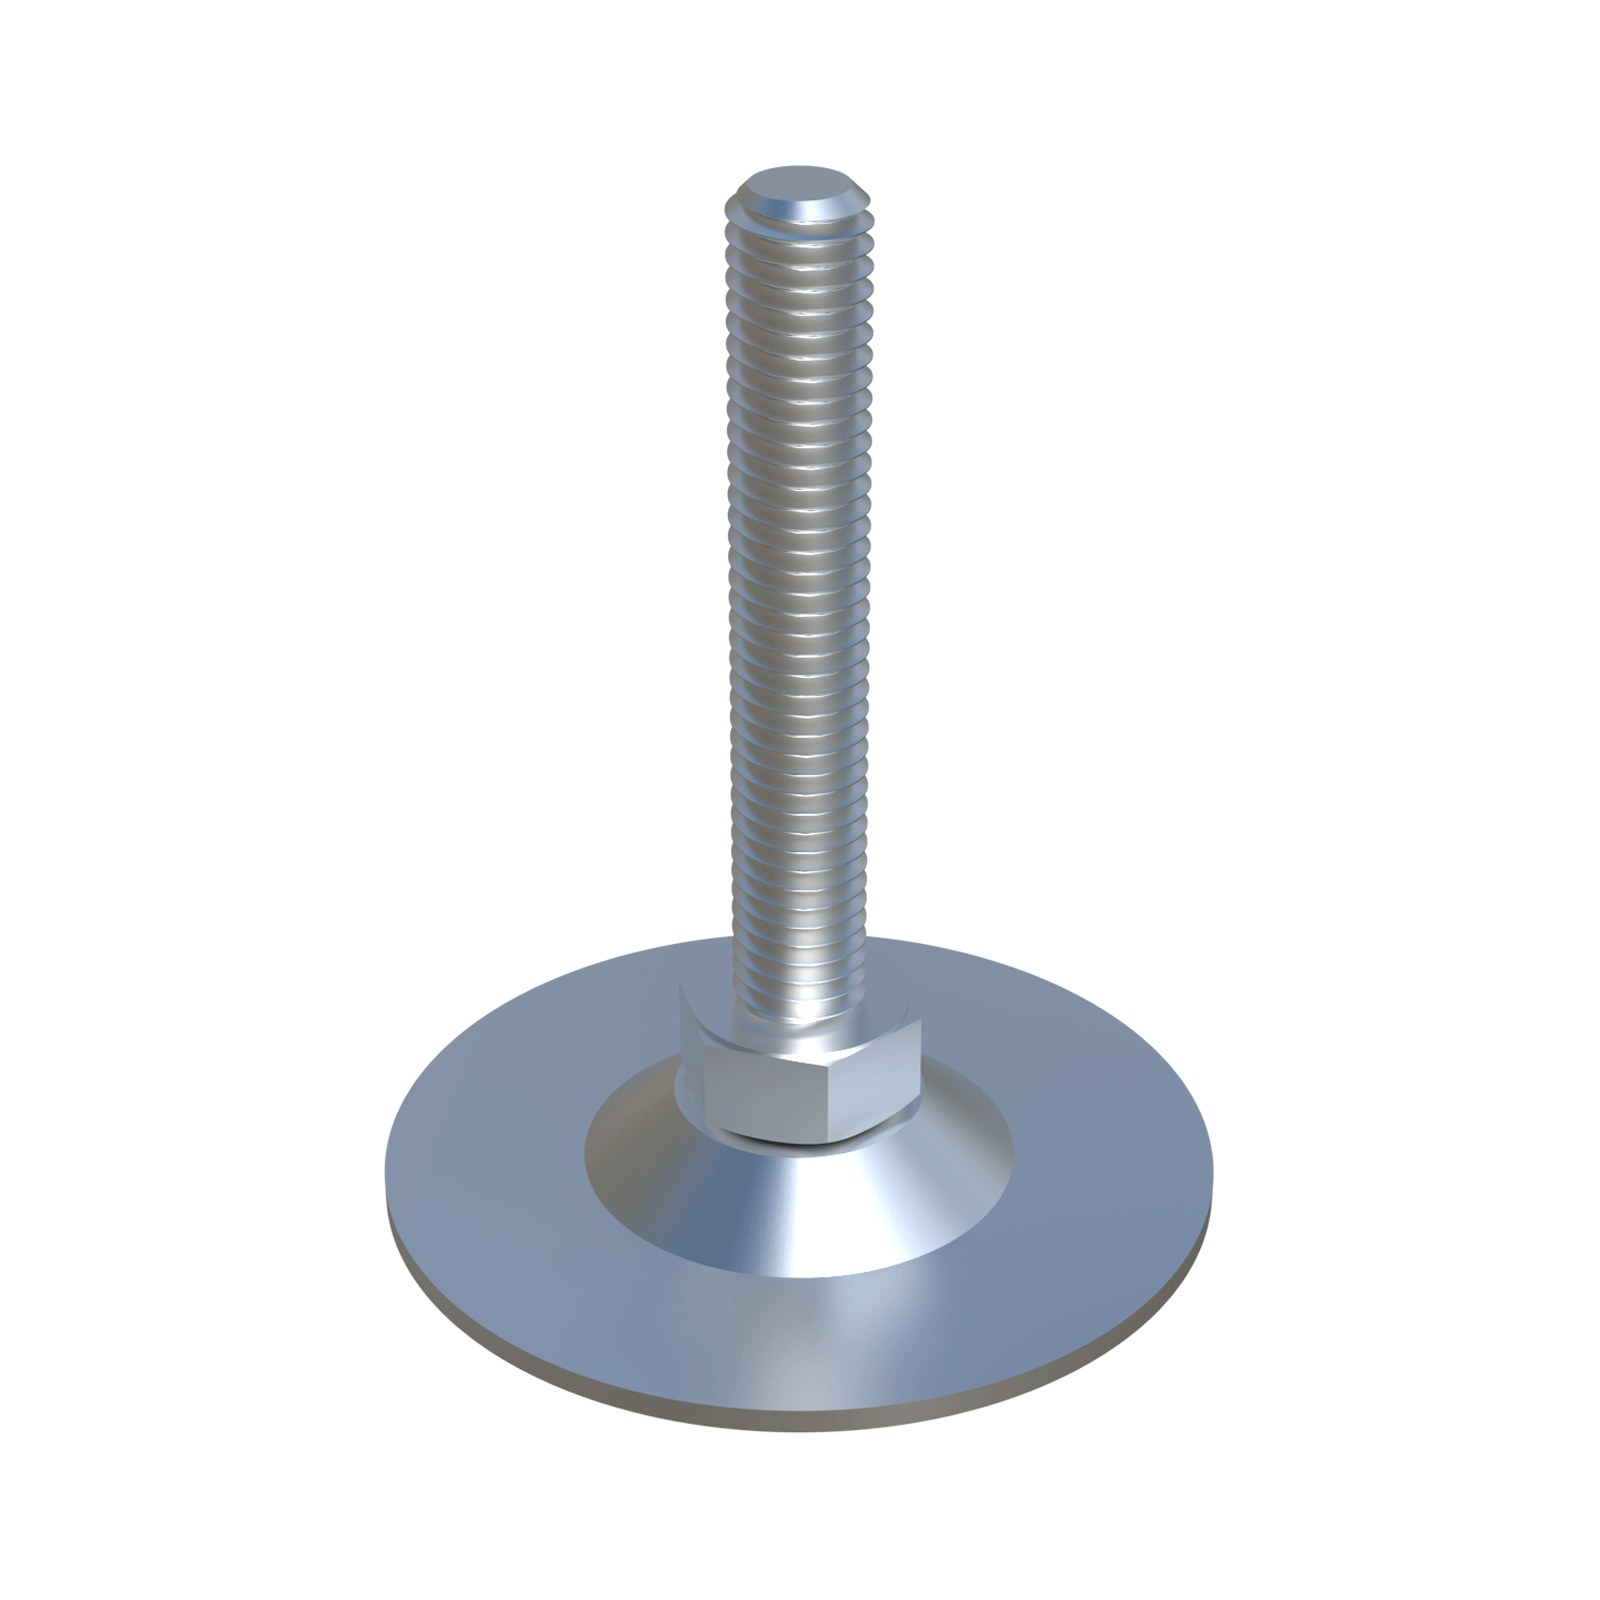 Die LHVB-Nivellierfüße sind aus <b>(ZCS)</b> verzinktem Stahl gefertigt und verfügen über eine DIN 558-4. 6-A2F- <b>Drehschraube</b> mit Sechskantbasis und einem Neigungsbereich zwischen <b>10º und 13º</b>, je nach Referenz. Sie bieten eine sichere Verbindung dank einer T20 Torx-Schraube (max. Drehmoment 3,4 Nm), die die Basis mit der Schraube sichert. <br>
Was die Basis betrifft, so gibt es je nach Referenz zwei Möglichkeiten: ohne Löcher und mit zwei Löchern, die eine <b>feste Verschraubung mit dem Boden</b> erlauben <i>(Referenzen, die auf H enden). </i> <br><br>
Diese Füße haben eine Tragfähigkeit von ca. <b>650 kg</b>, obwohl wir immer empfehlen, einen Sicherheitsabstand einzuhalten. Nivellierer sollten ohne Last eingestellt werden und wir empfehlen ihre Verwendung nicht als Schieber, sondern als statische Elemente. <br><br>
Wenn Sie die Oberfläche vor möglichen Kratzern/Schlägen schützen müssen, empfehlen wir Ihnen, die Anbringung der Schutzkappe <b><a href='
https://www.iscsl.de/kippbarer-hohenversteller-auf-verzinktem-blechteller/lkb/'>
LKB</a></b> aus Polyethylen niedriger Dichte <b>(LDPE)</b> <br><br>
Sonderkonfigurationen bieten wir auf Anfrage an:<br><br>
<i>* Andere Längen und Gewindemaße</i>. <br>
<i>* Basis aus Edelstahl <b>(SS). </b></i> <br>
<i>* <b>Sechskantschlitz</b> für Inbusschlüssel am oberen Ende des Gewindes</i>.